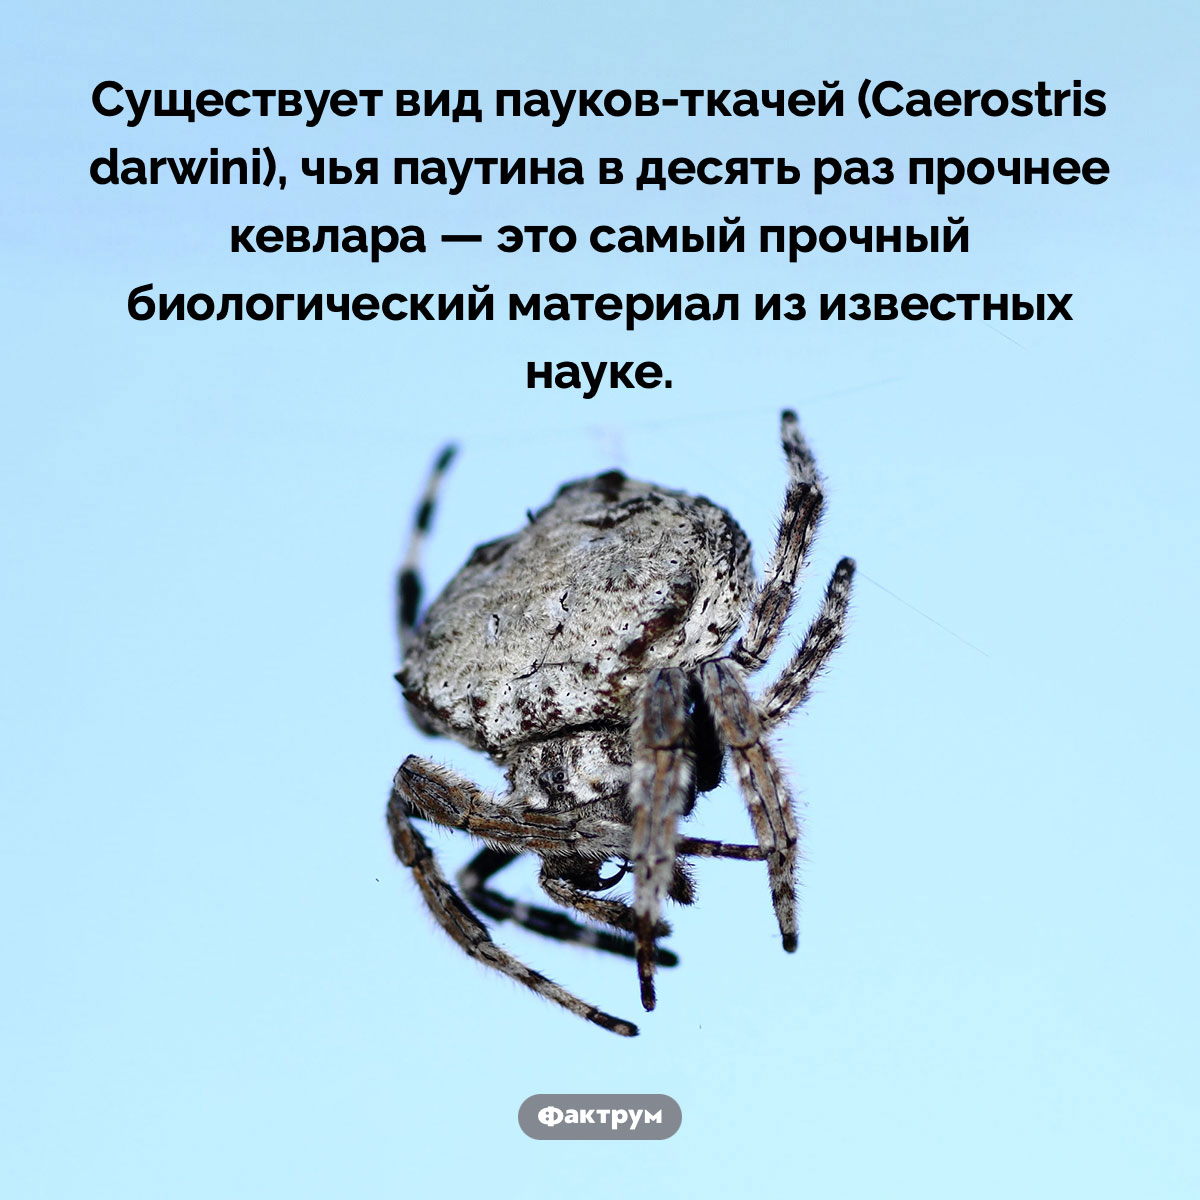 Самый прочный биологический материал из известных науке. Существует вид пауков-ткачей (Caerostris darwini), чья паутина в десять раз прочнее кевлара — это самый прочный биологический материал из известных науке.